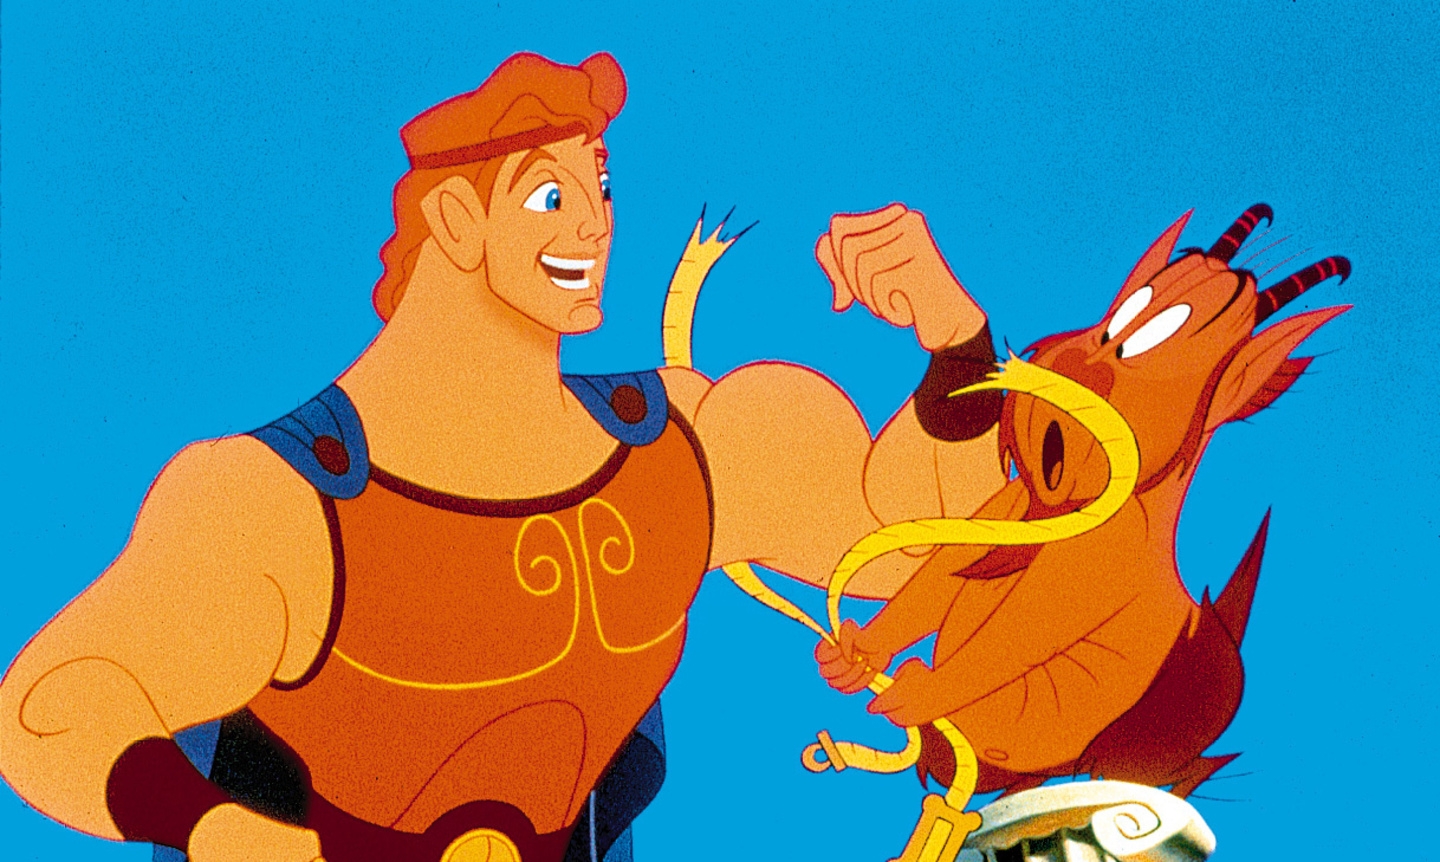 Hercules / Zeichentrickfiguren